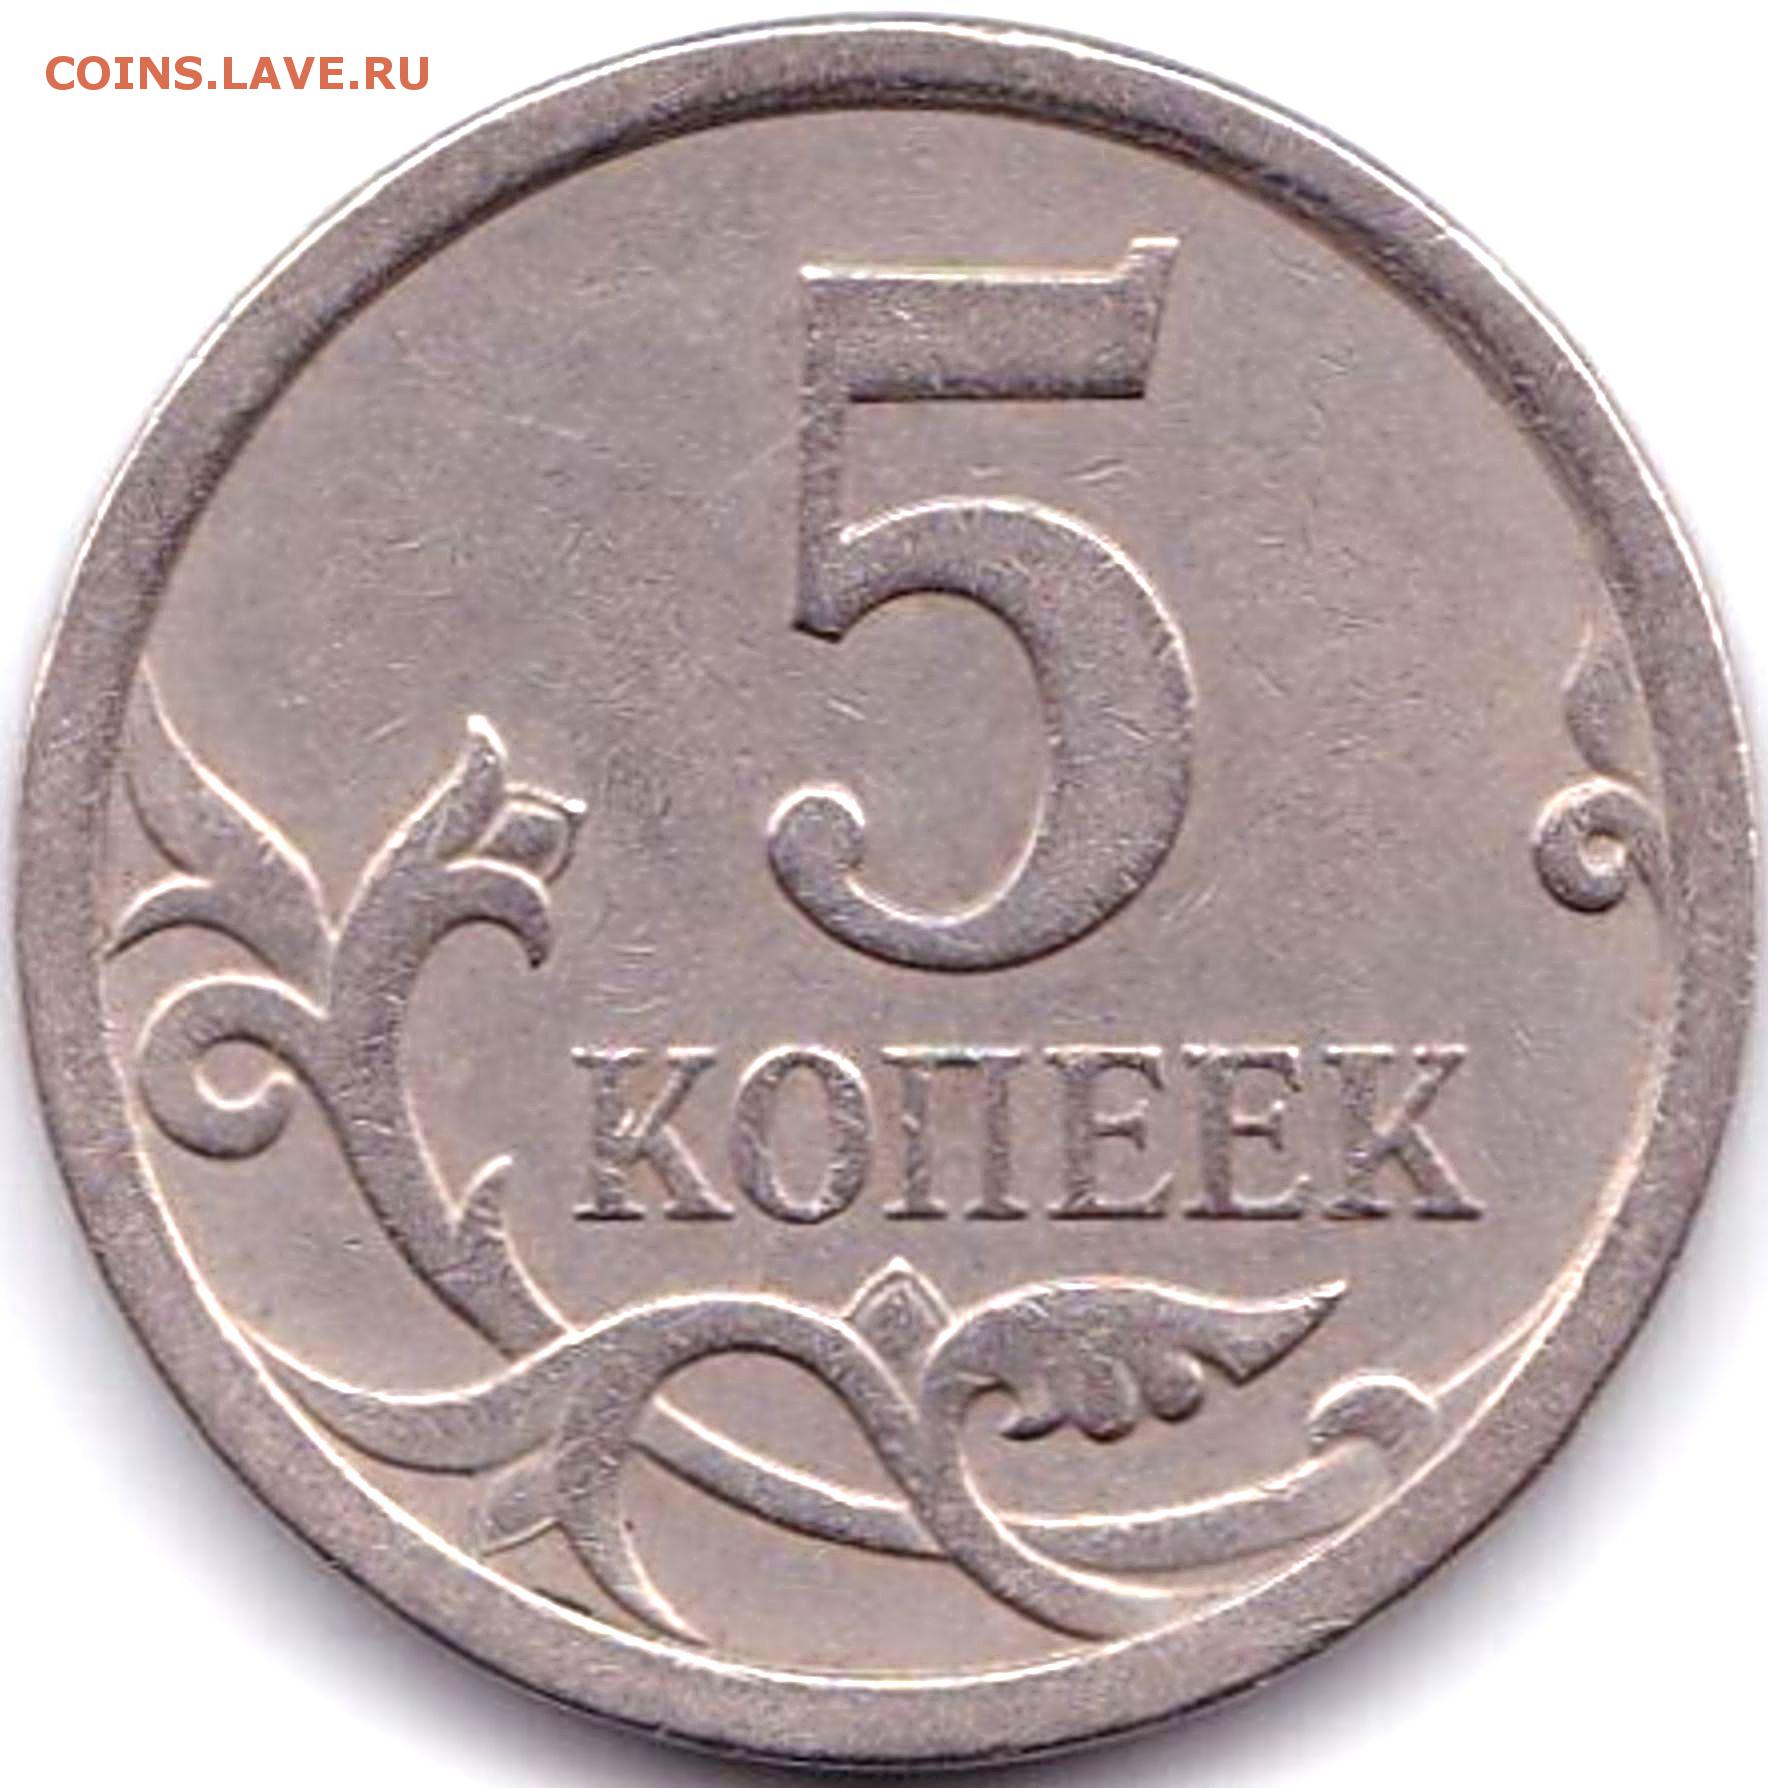 3 рубля 5 копеек. 5 Копеек 2008 м. 5 Копеек 2008 СП. 5 Копеек м 2008 редкая. 5 Копеек 2007 СП.